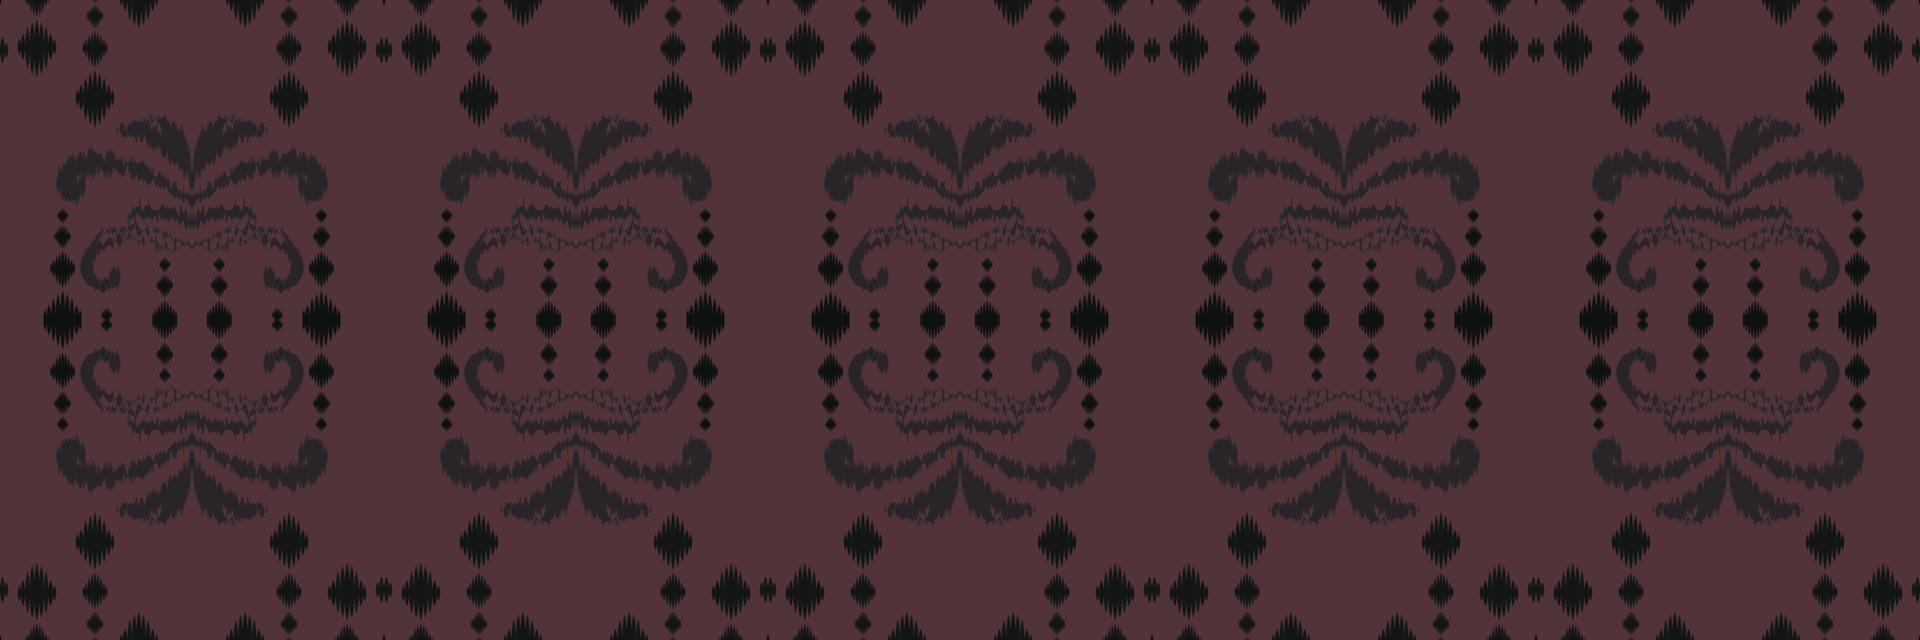 ikat projeta padrão sem emenda asteca tribal. étnico geométrico ikkat batik vetor digital design têxtil para estampas tecido saree mughal pincel símbolo faixas textura kurti kurtis kurtas